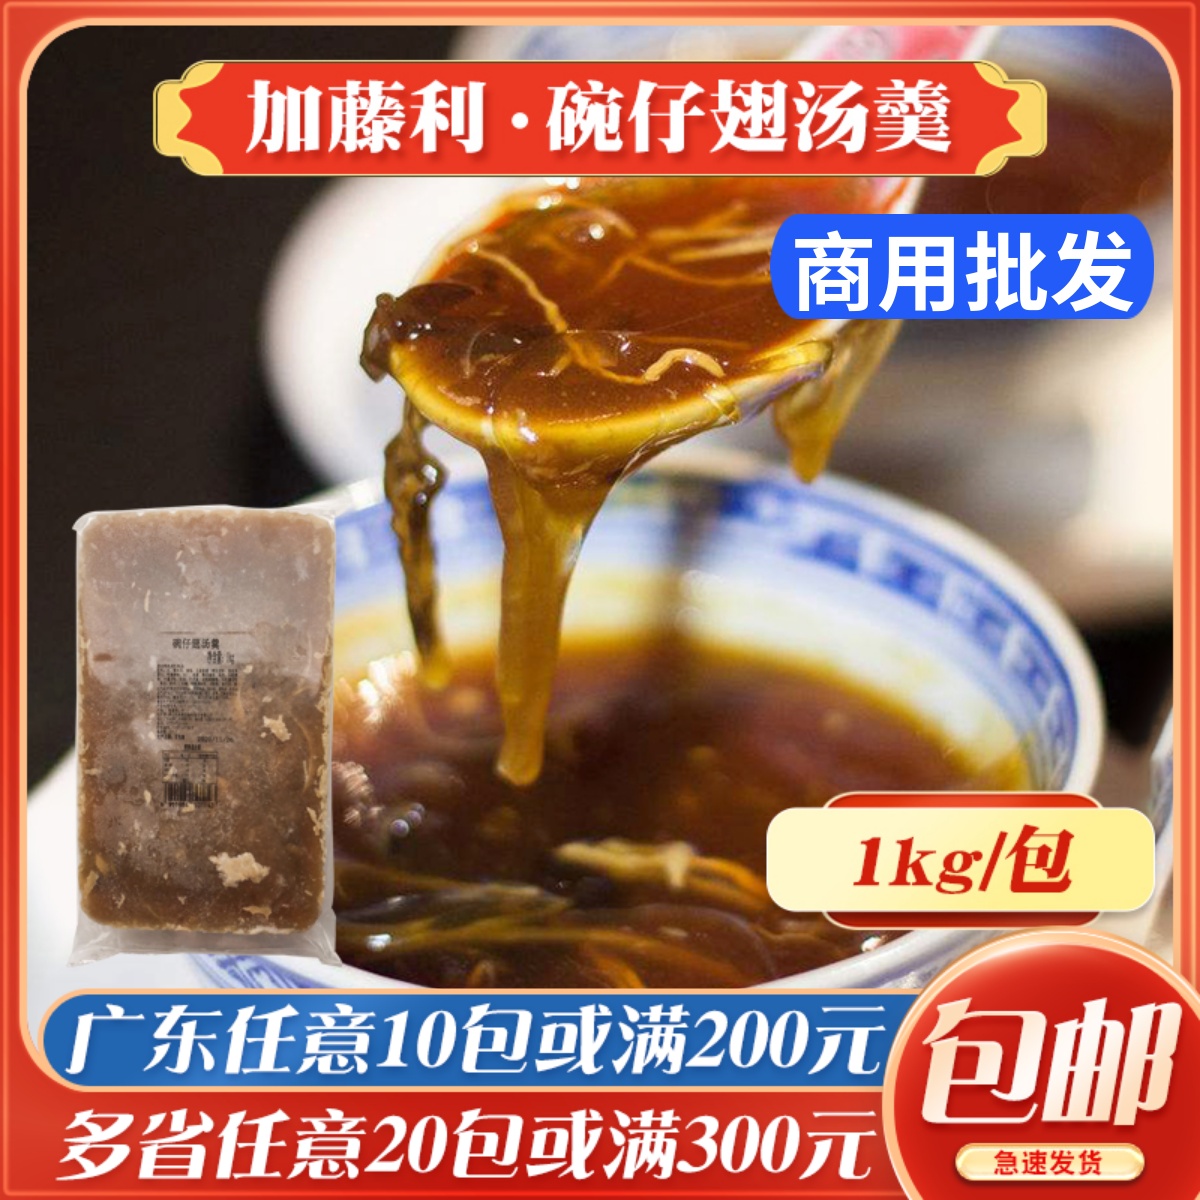 香港街头特色小吃仿鱼翅汤羹速冻1kg商用 加藤利碗仔翅汤羹广式